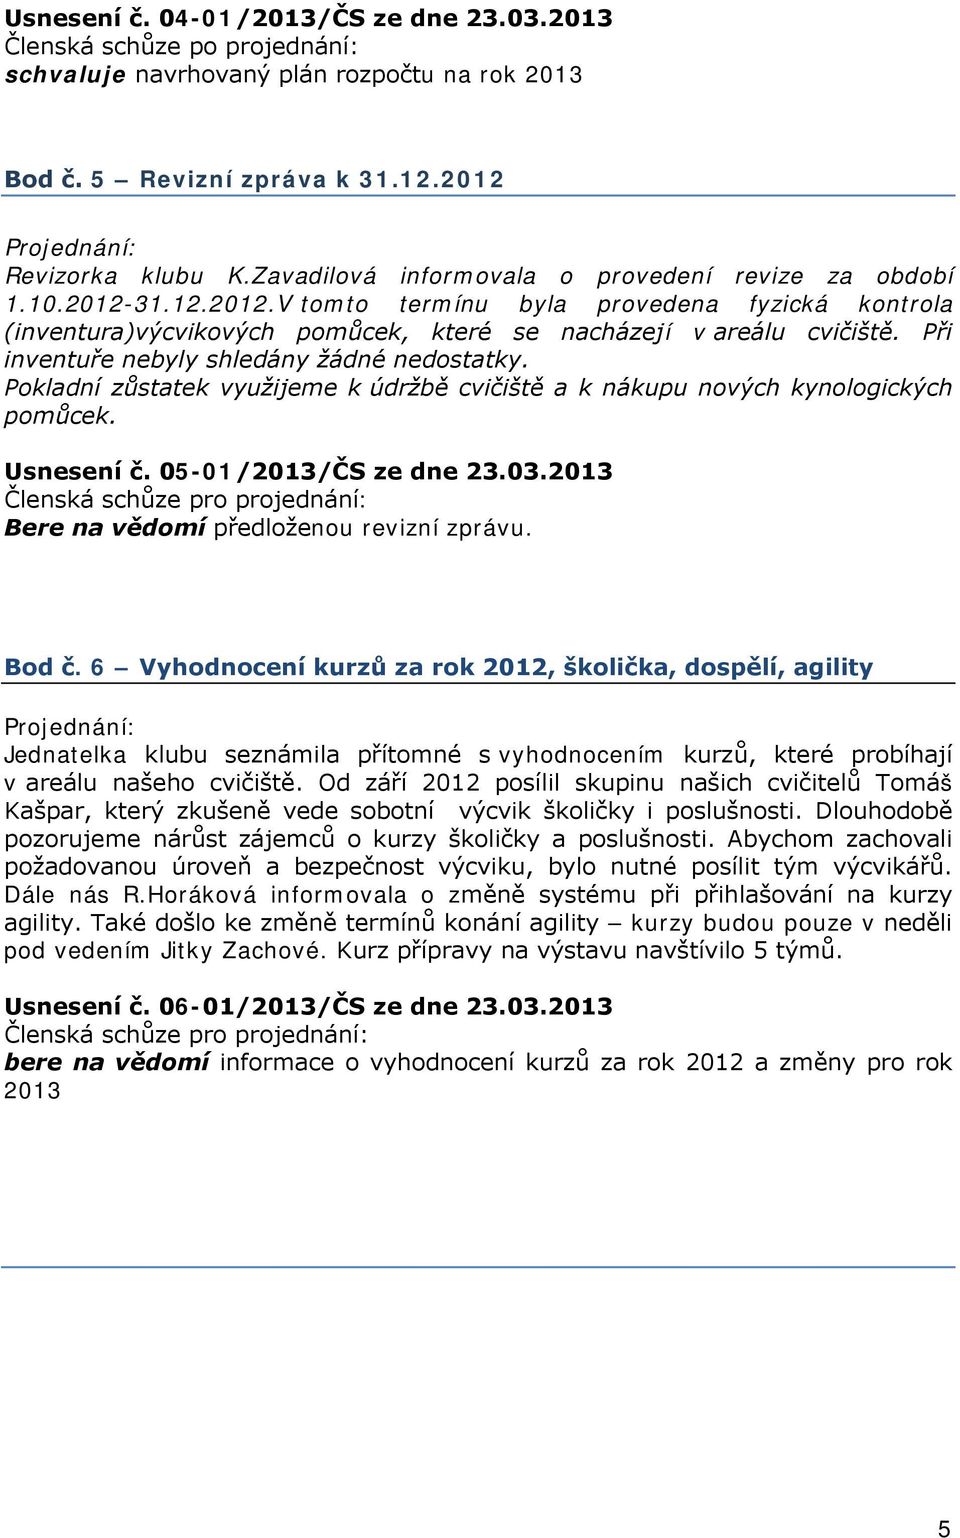 Pokladní zůstatek využijeme k údržbě cvičiště a k nákupu nových kynologických pomůcek. Usnesení č. 05-01/2013/ČS ze dne 23.03.